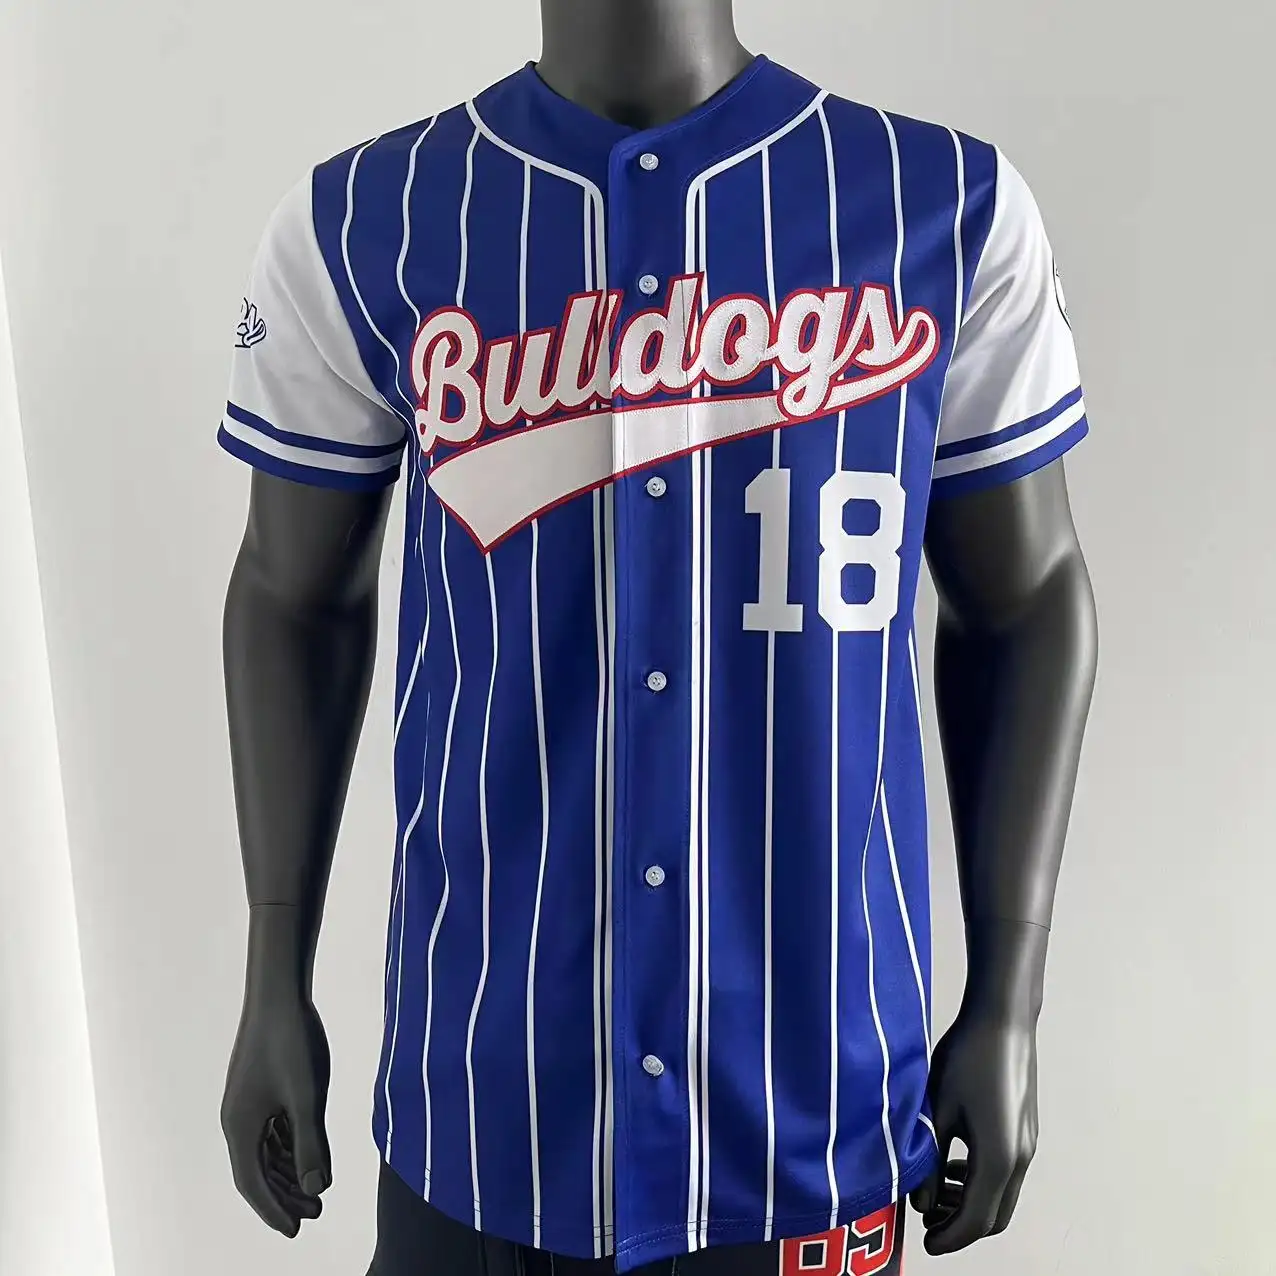 Maillots de baseball par sublimation avec logo et numéro personnalisés, uniformes de baseball de qualité supérieure